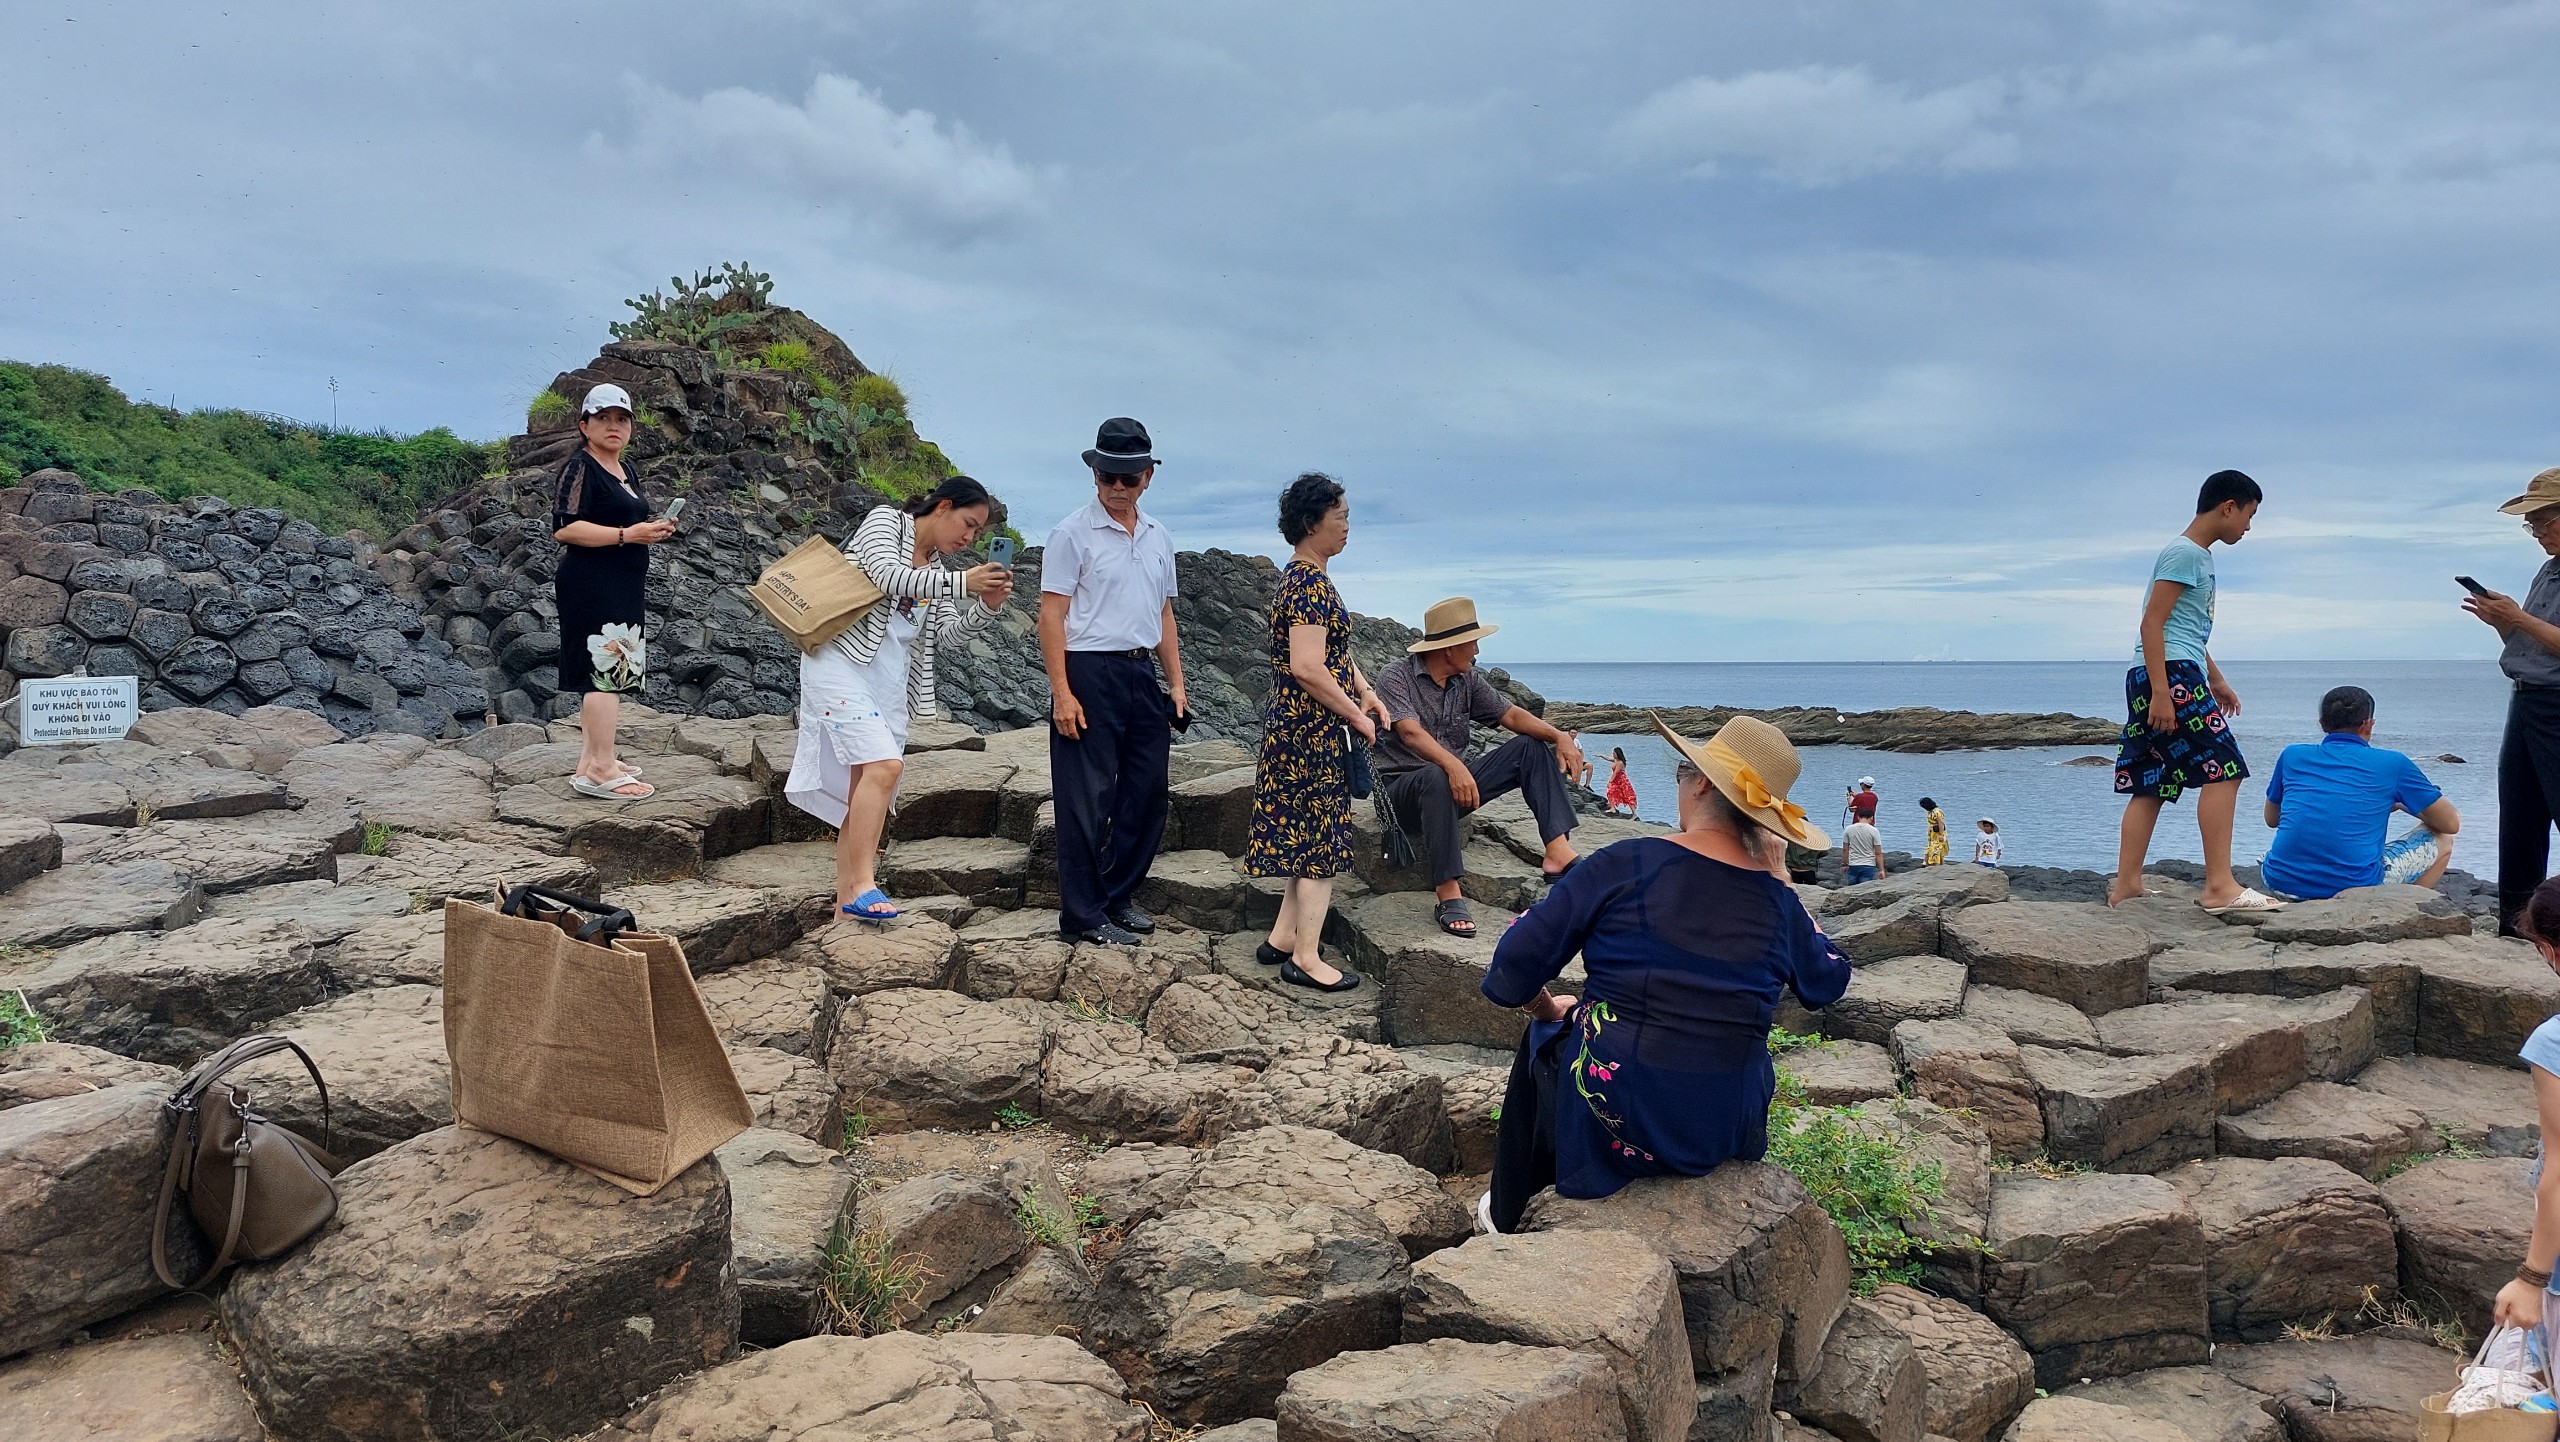 Mùa hè - Du khách chen nhau chụp hình bãi đá cổ triệu năm - 5